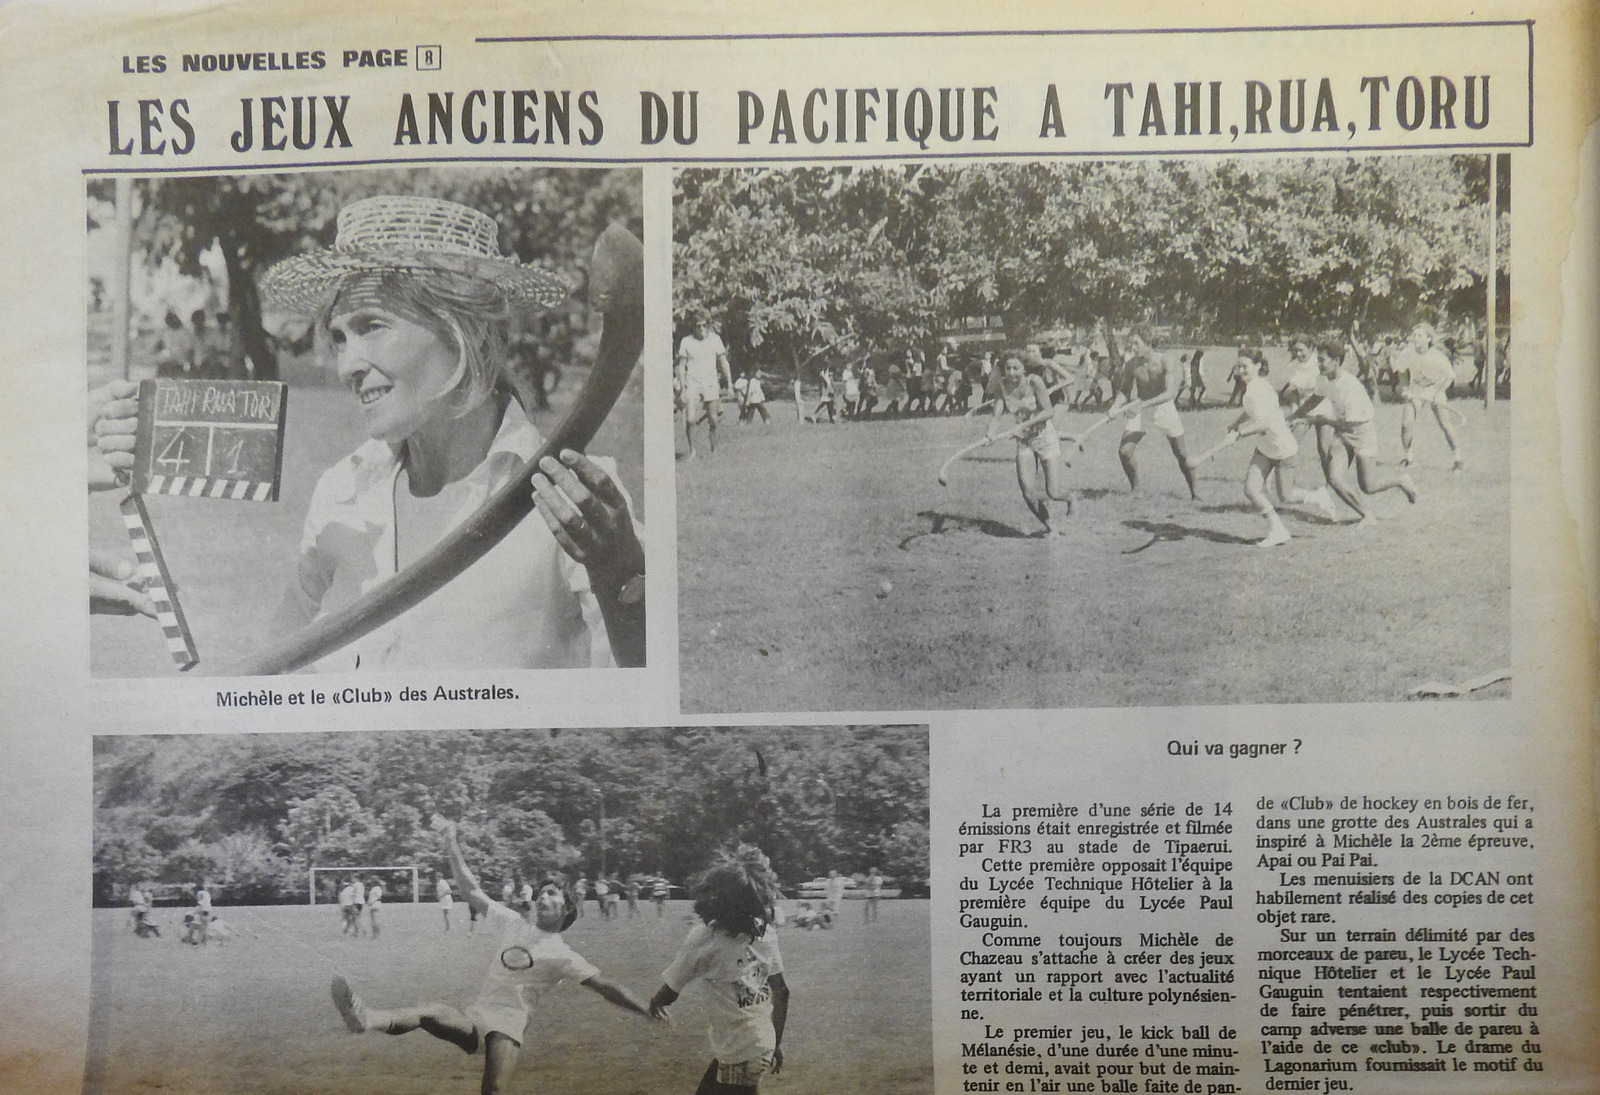 Coupure de presse des années 70, à l'époque où Michèle Dechazeaux animait le jeu "Tahi, rua, toru".